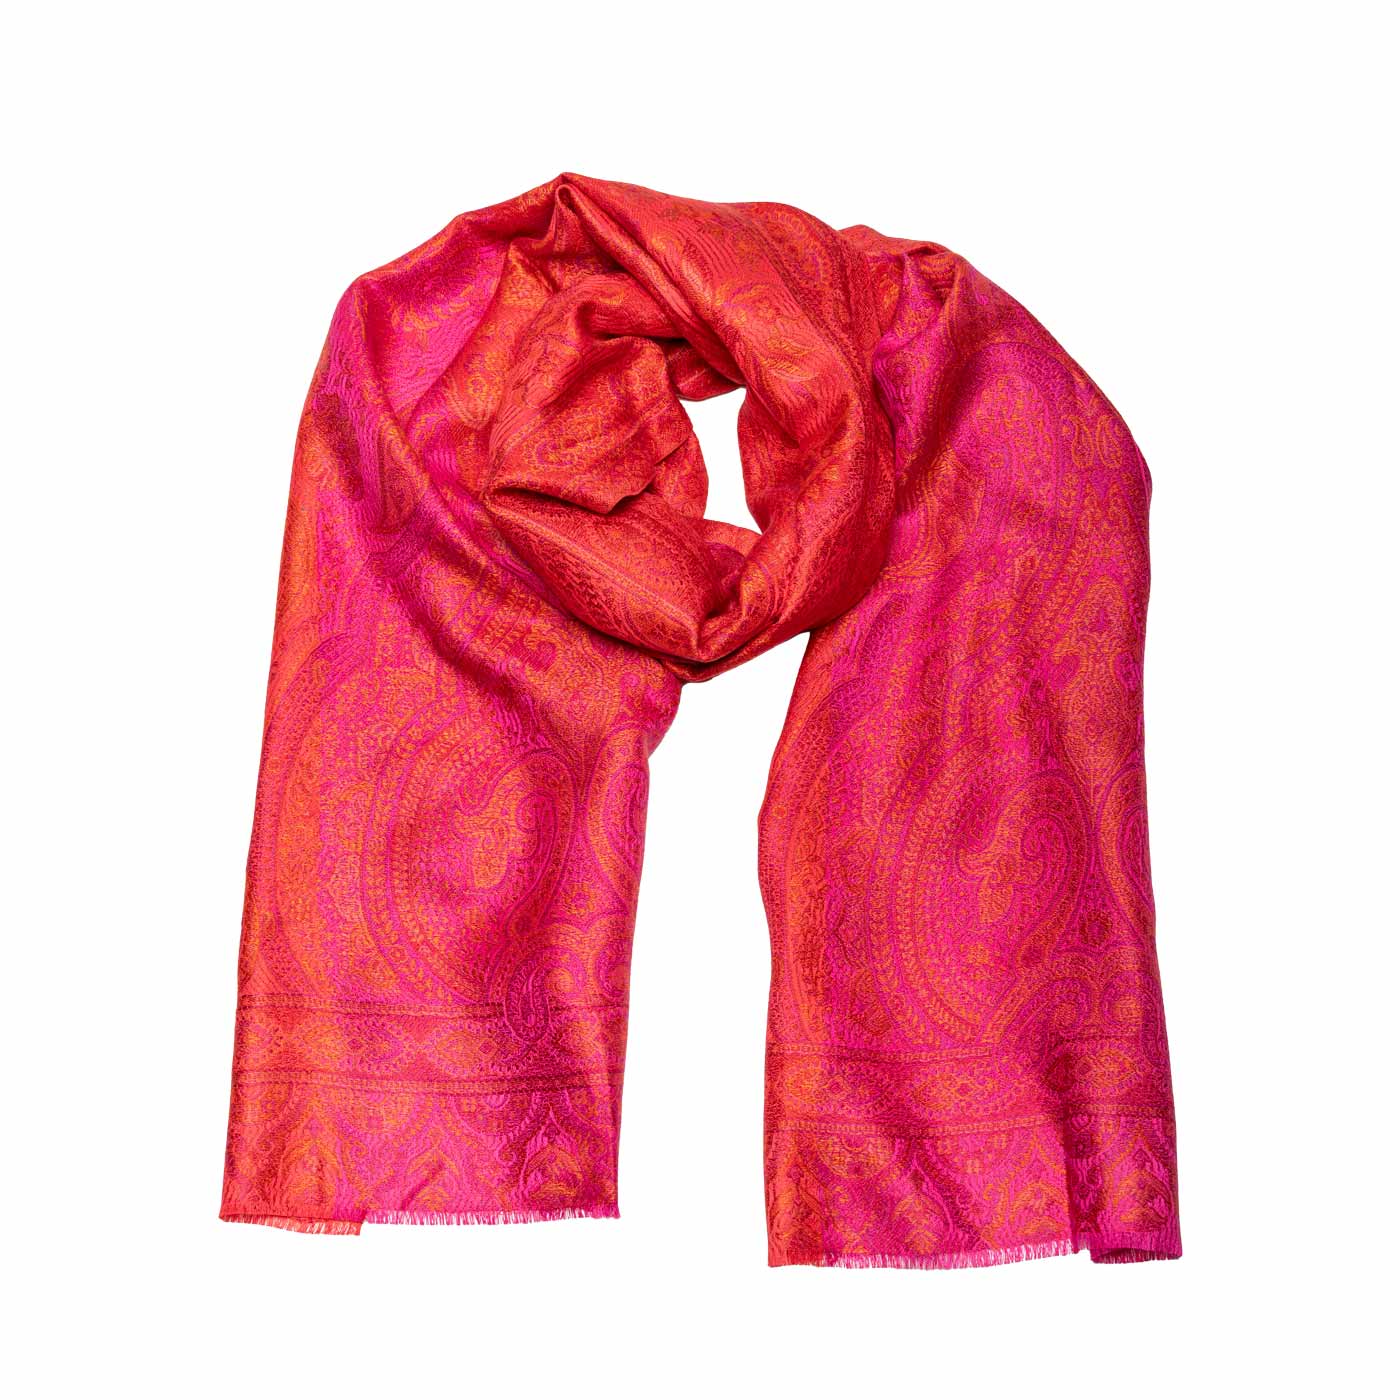 Seidenschal mit Paisley und Floral Design in Rot, Orange, Pink shirinsehan.com